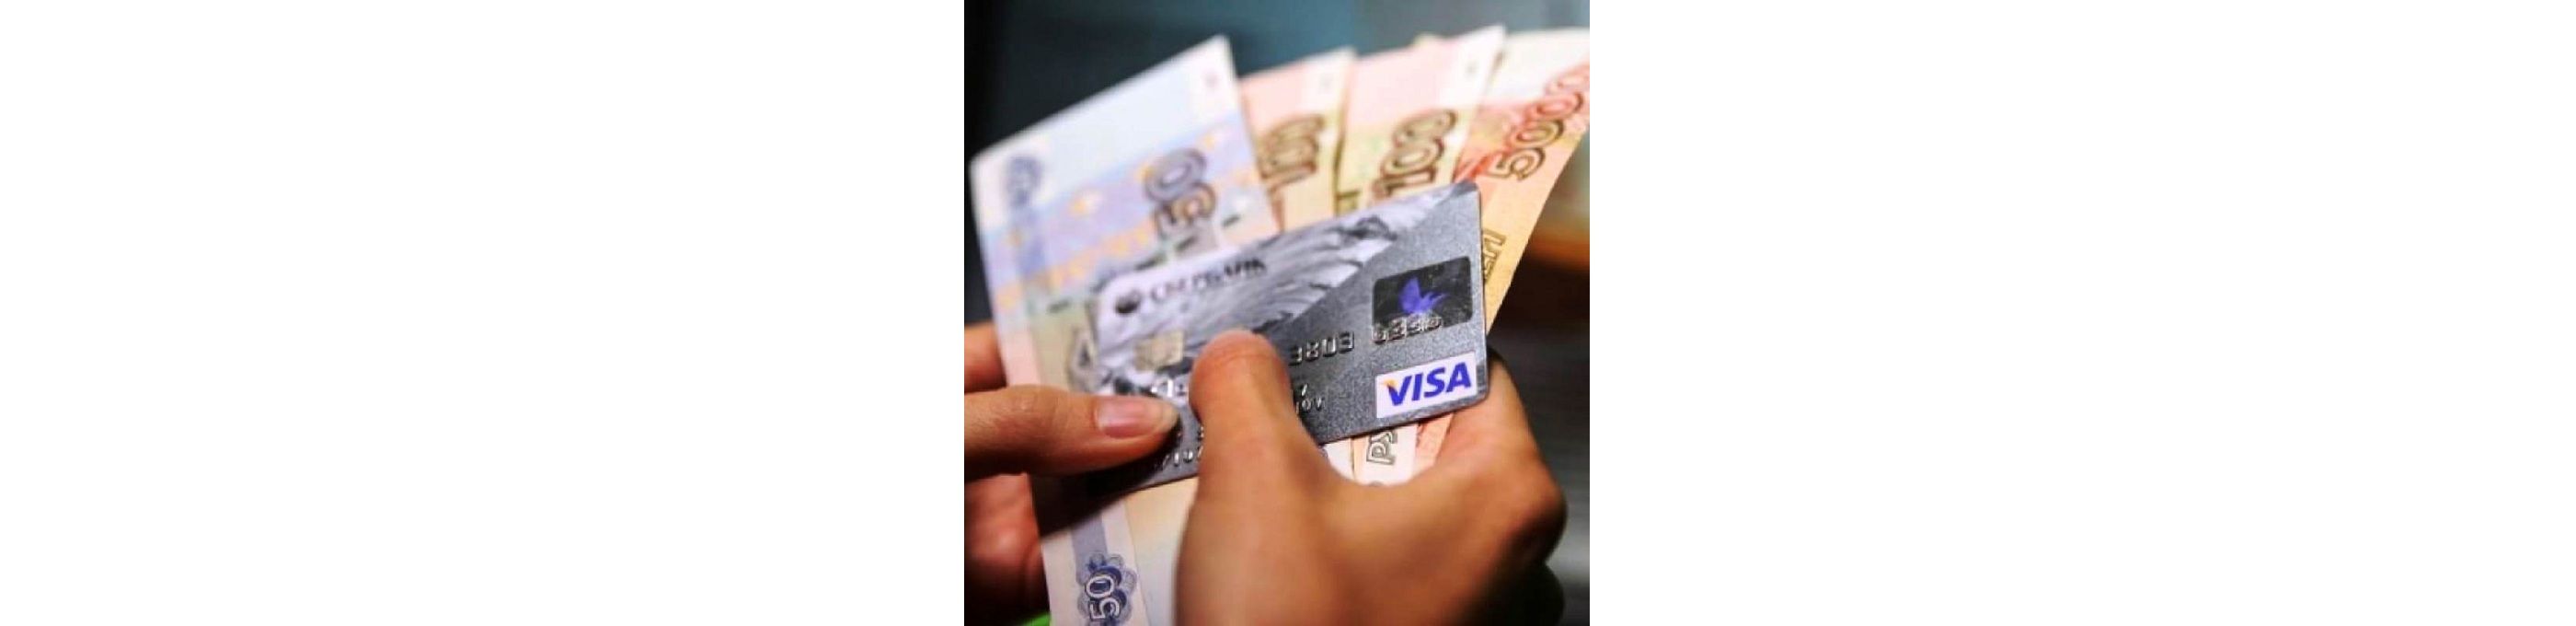 Этим летом Сбербанком планируется введение услуги по снятию наличных денег в обычных магазинах прямо на кассе при оплате покупок картой или безналичным расчетом.